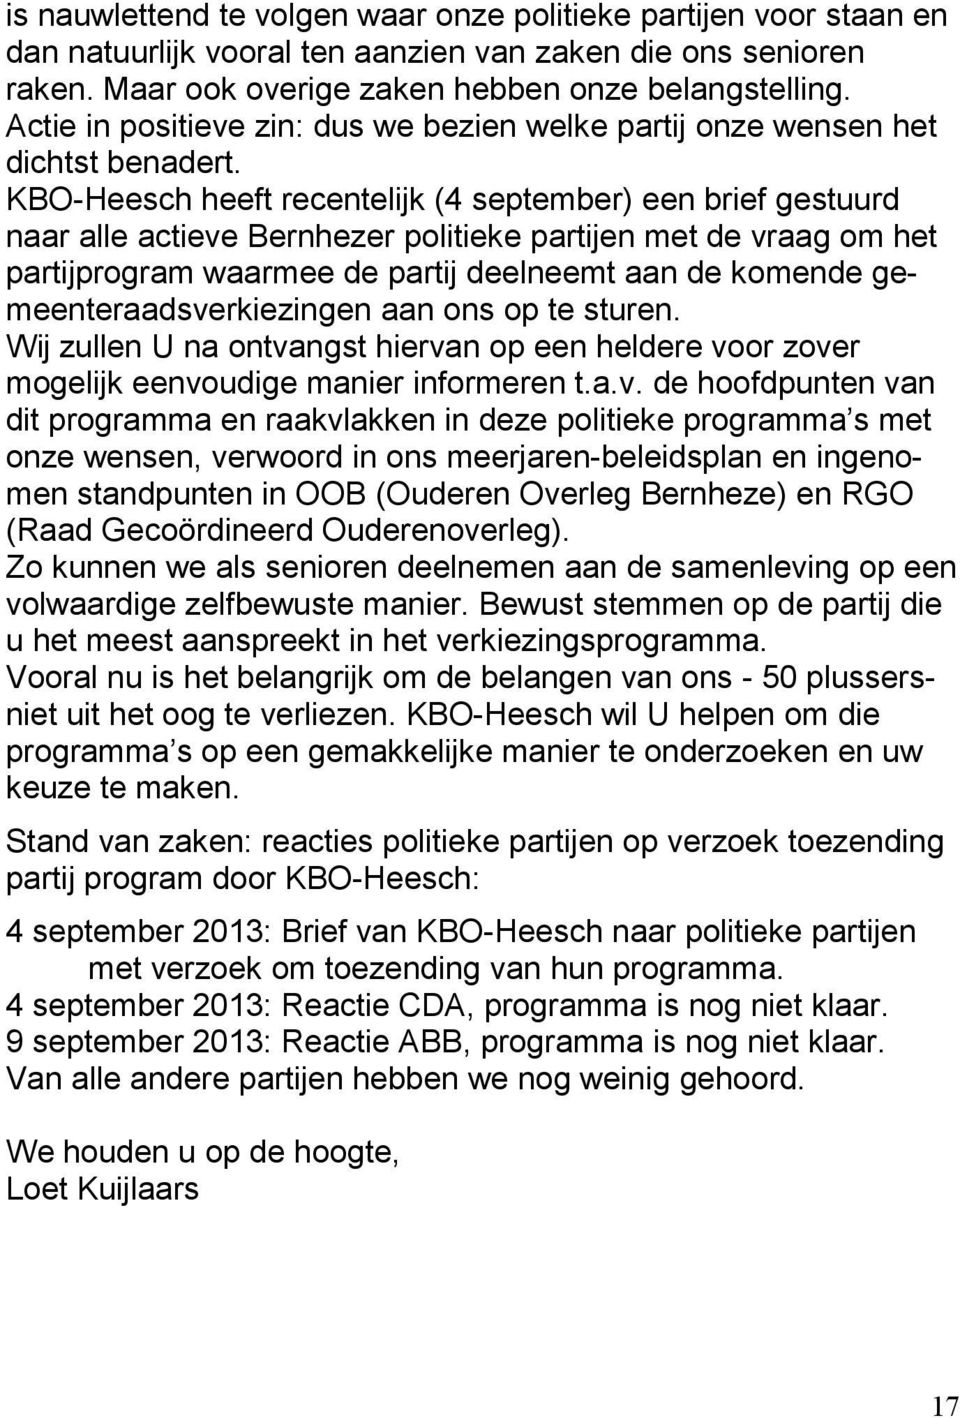 KBO-Heesch heeft recentelijk (4 september) een brief gestuurd naar alle actieve Bernhezer politieke partijen met de vraag om het partijprogram waarmee de partij deelneemt aan de komende